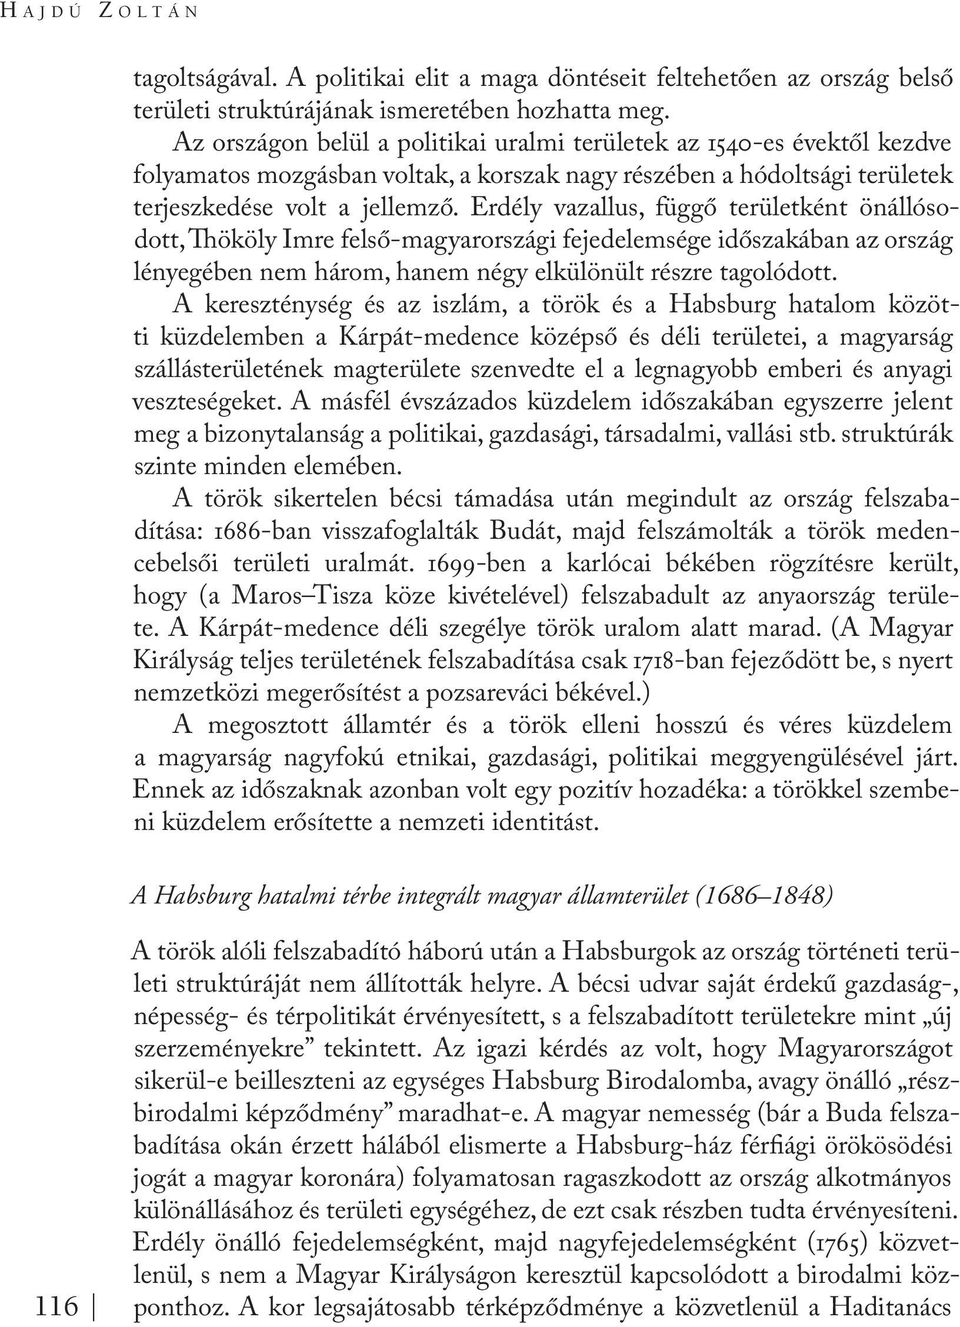 Erdély vazallus, függő területként önállósodott, Thököly Imre felső-magyarországi fejedelemsége időszakában az ország lényegében nem három, hanem négy elkülönült részre tagolódott.